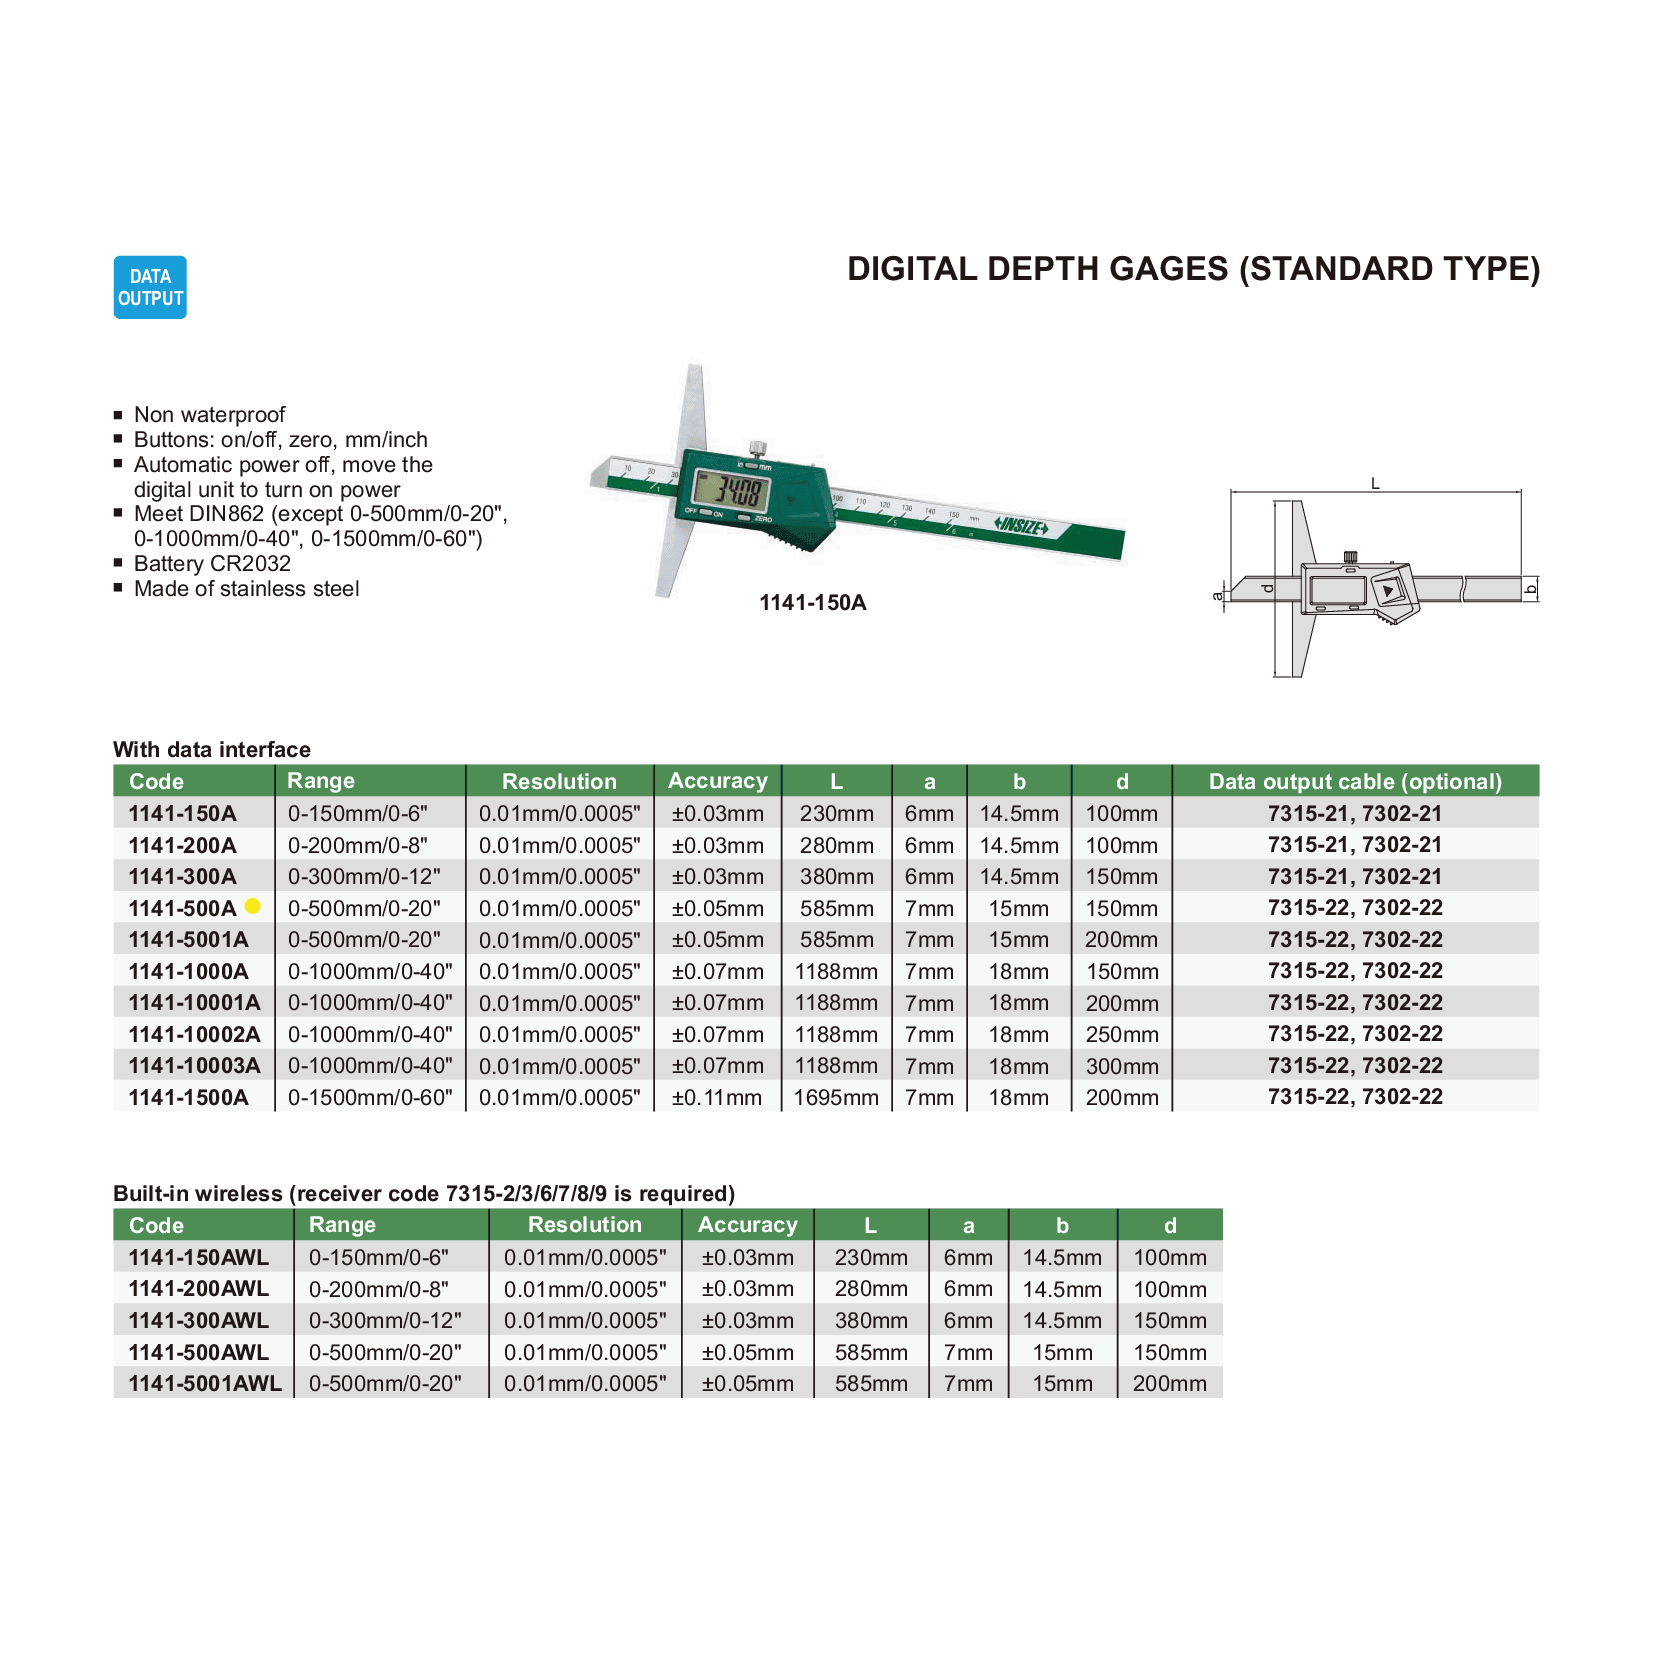 Insize Digital Depth Gauge 0-500mm/0-20" Range Series 1141-500A